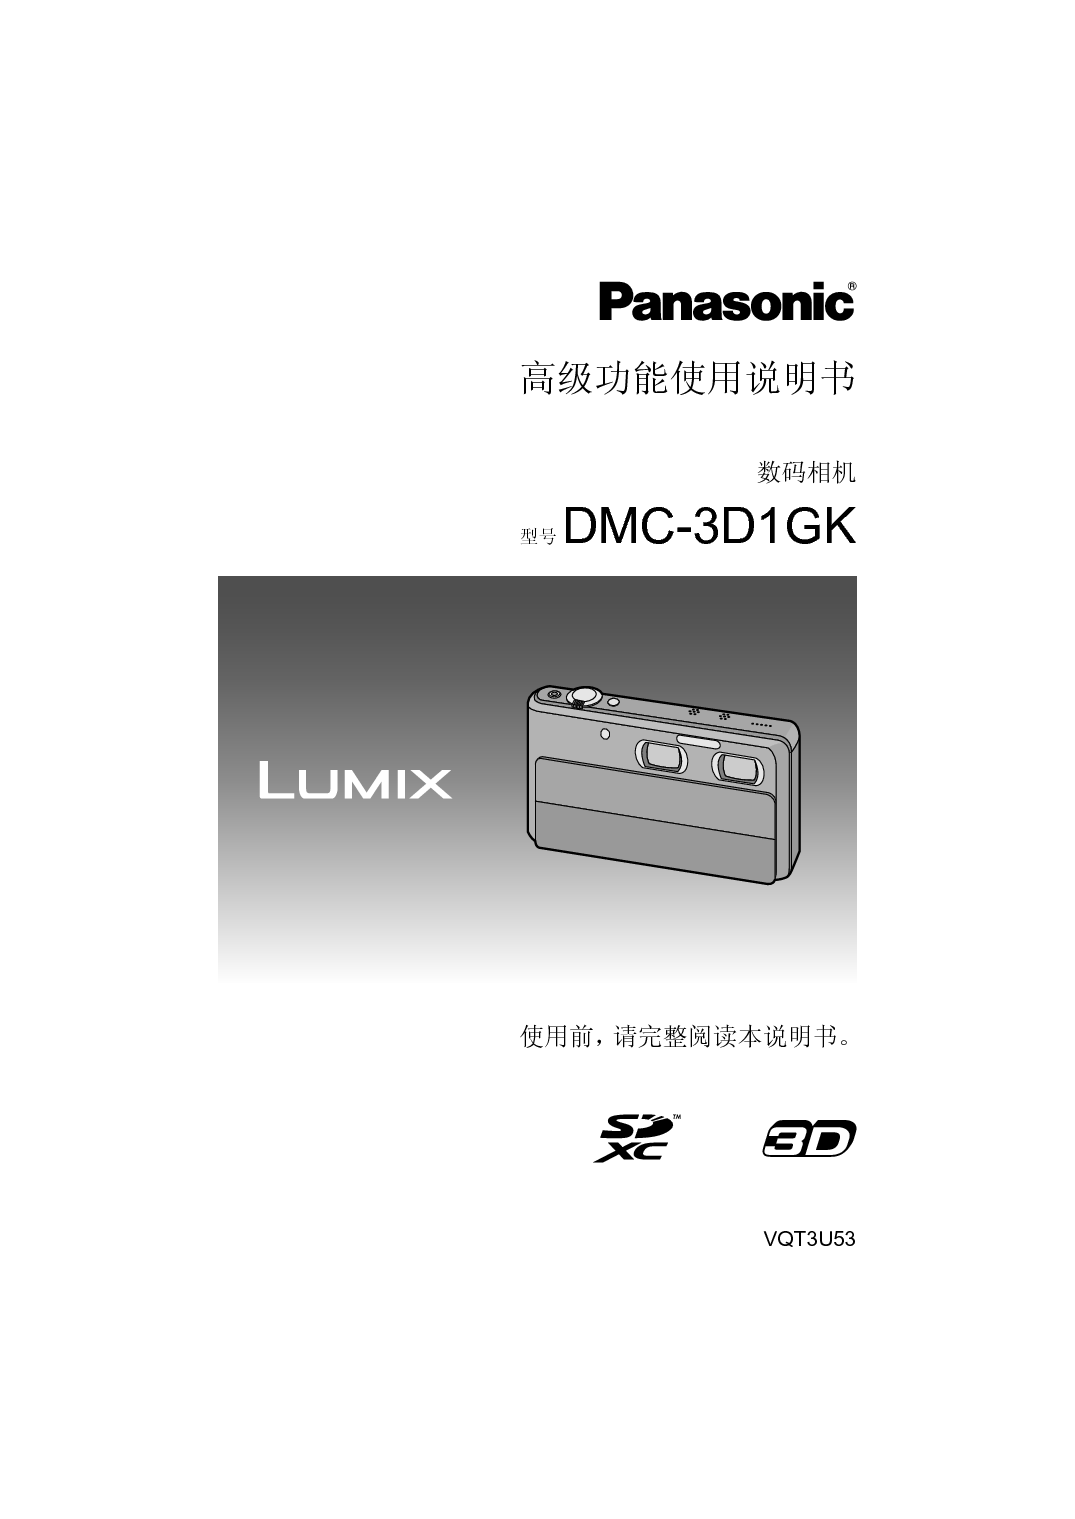 松下 Panasonic DMC-3D1GK 高级说明书 封面